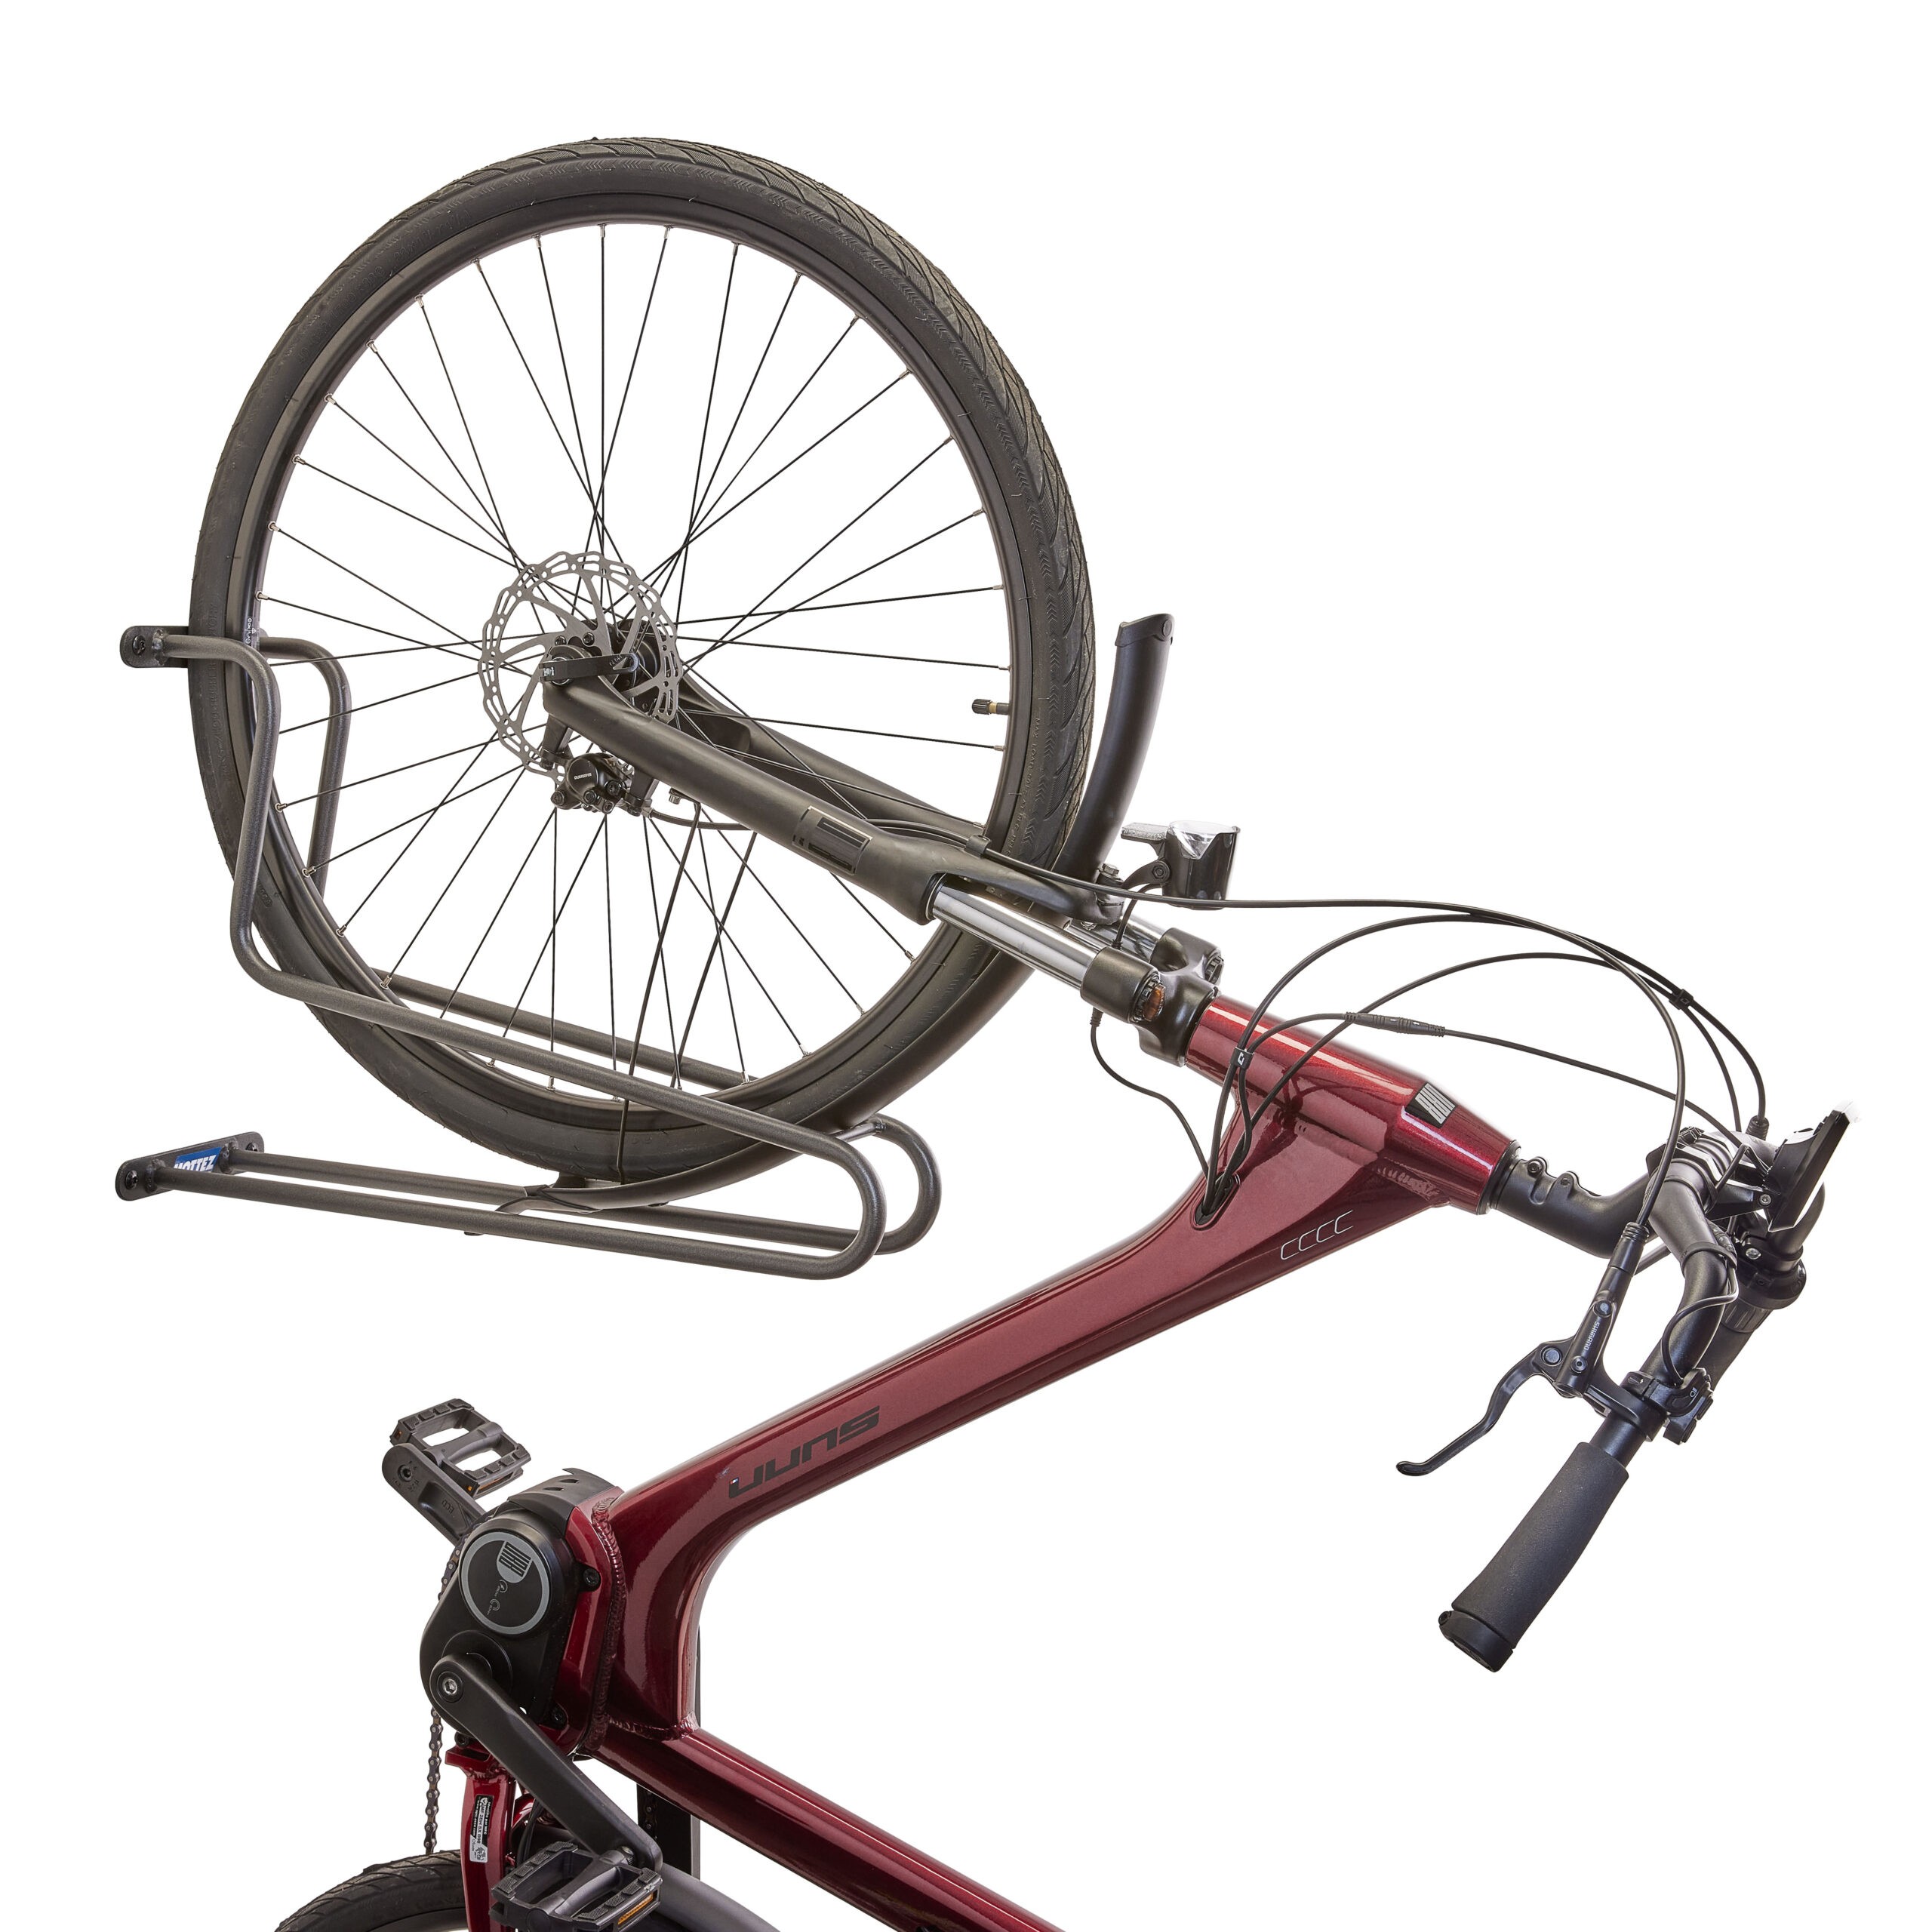 Prie sienos tvirtinamas fiksuotas vertikalus dviračio laikiklis fiksuojantis dviračio padangą M091S